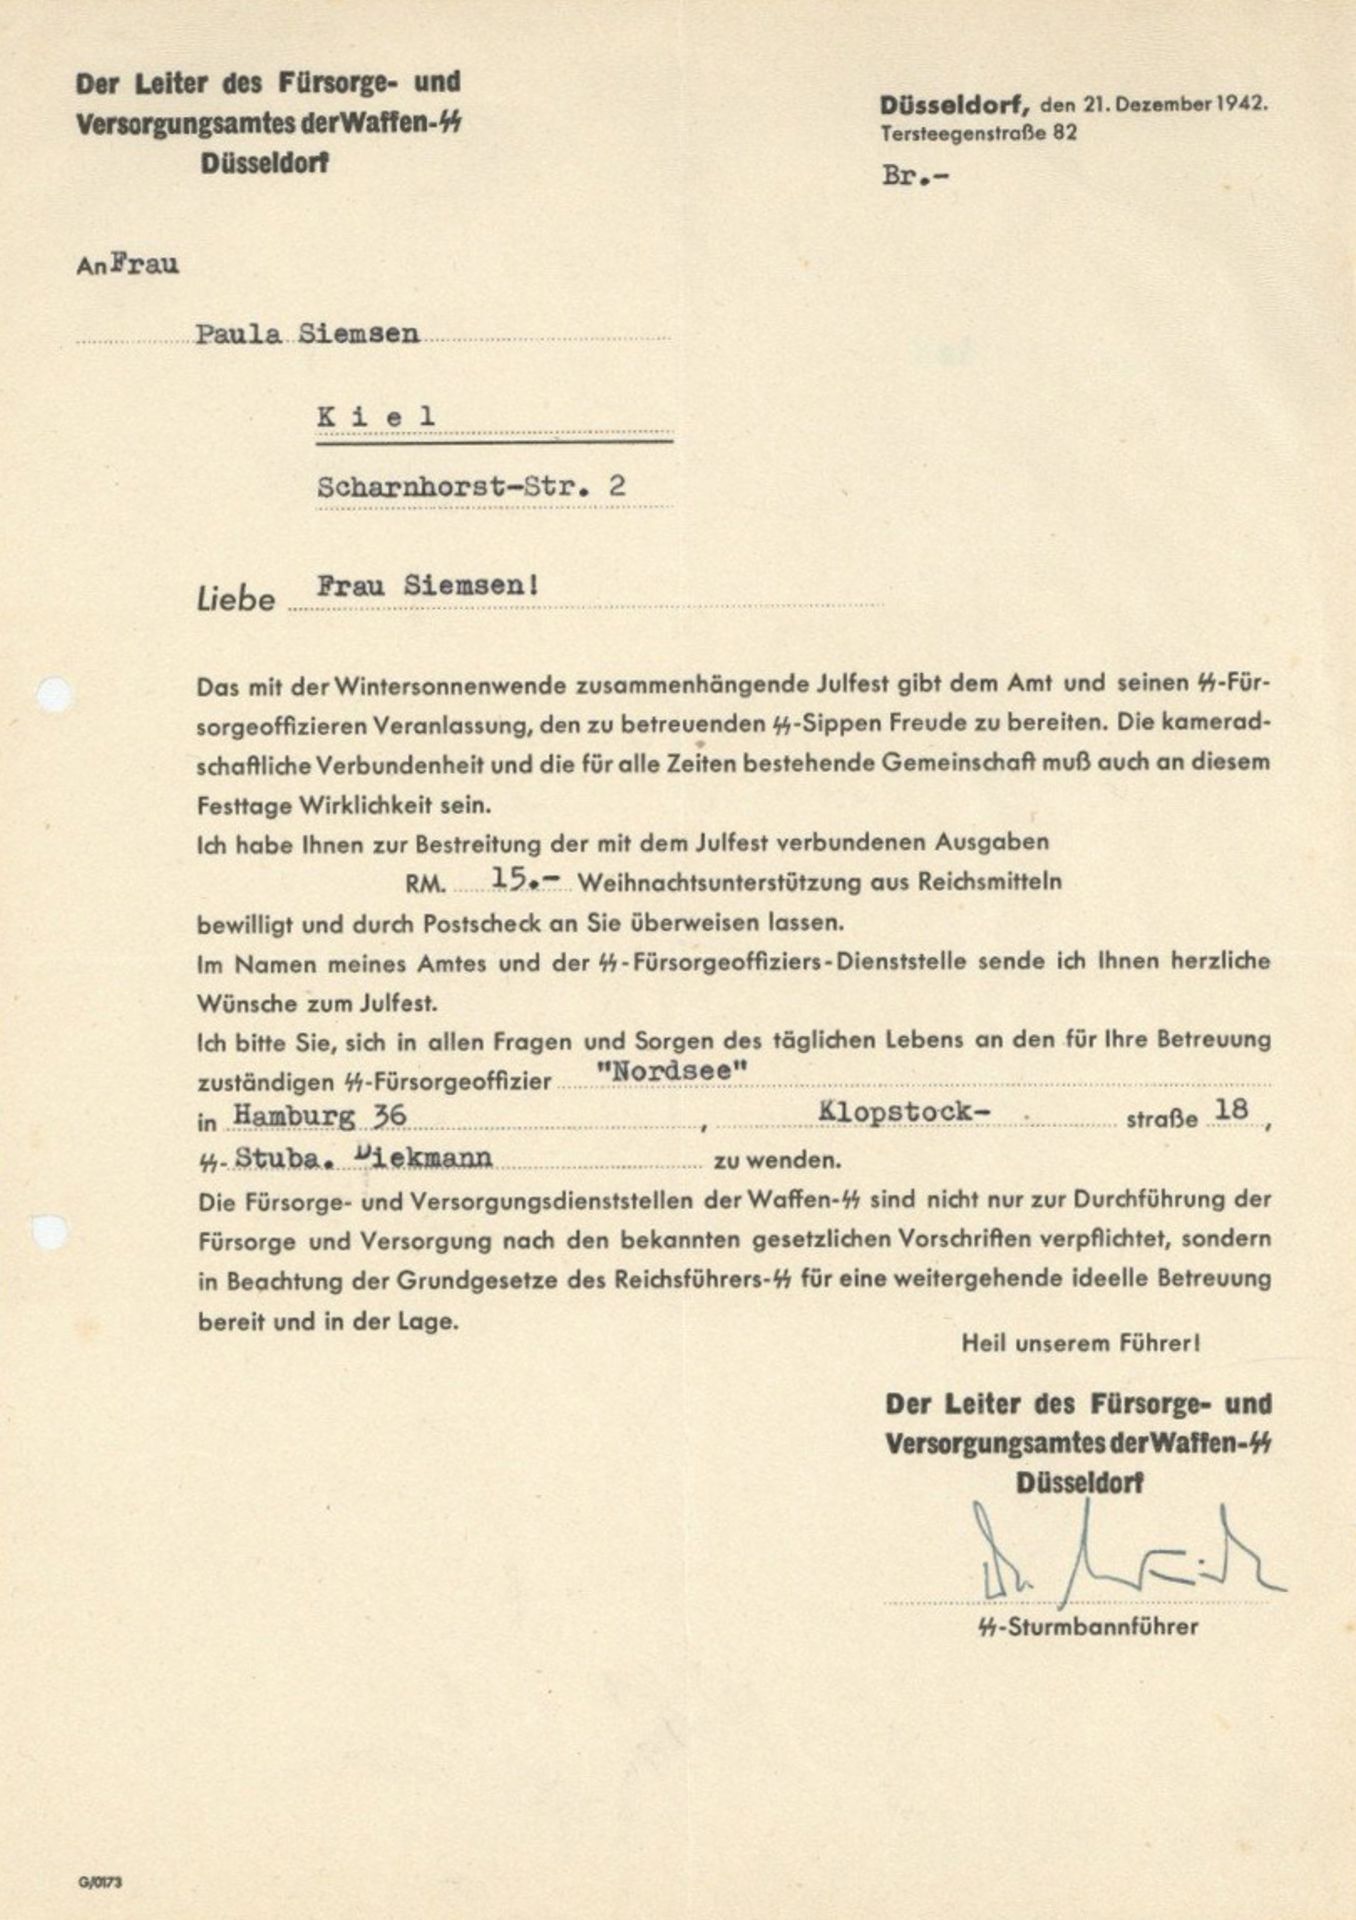 SS Dokument Briefinhalt von der Fürsorge und Versorgungsamtes der Waffen-SS über